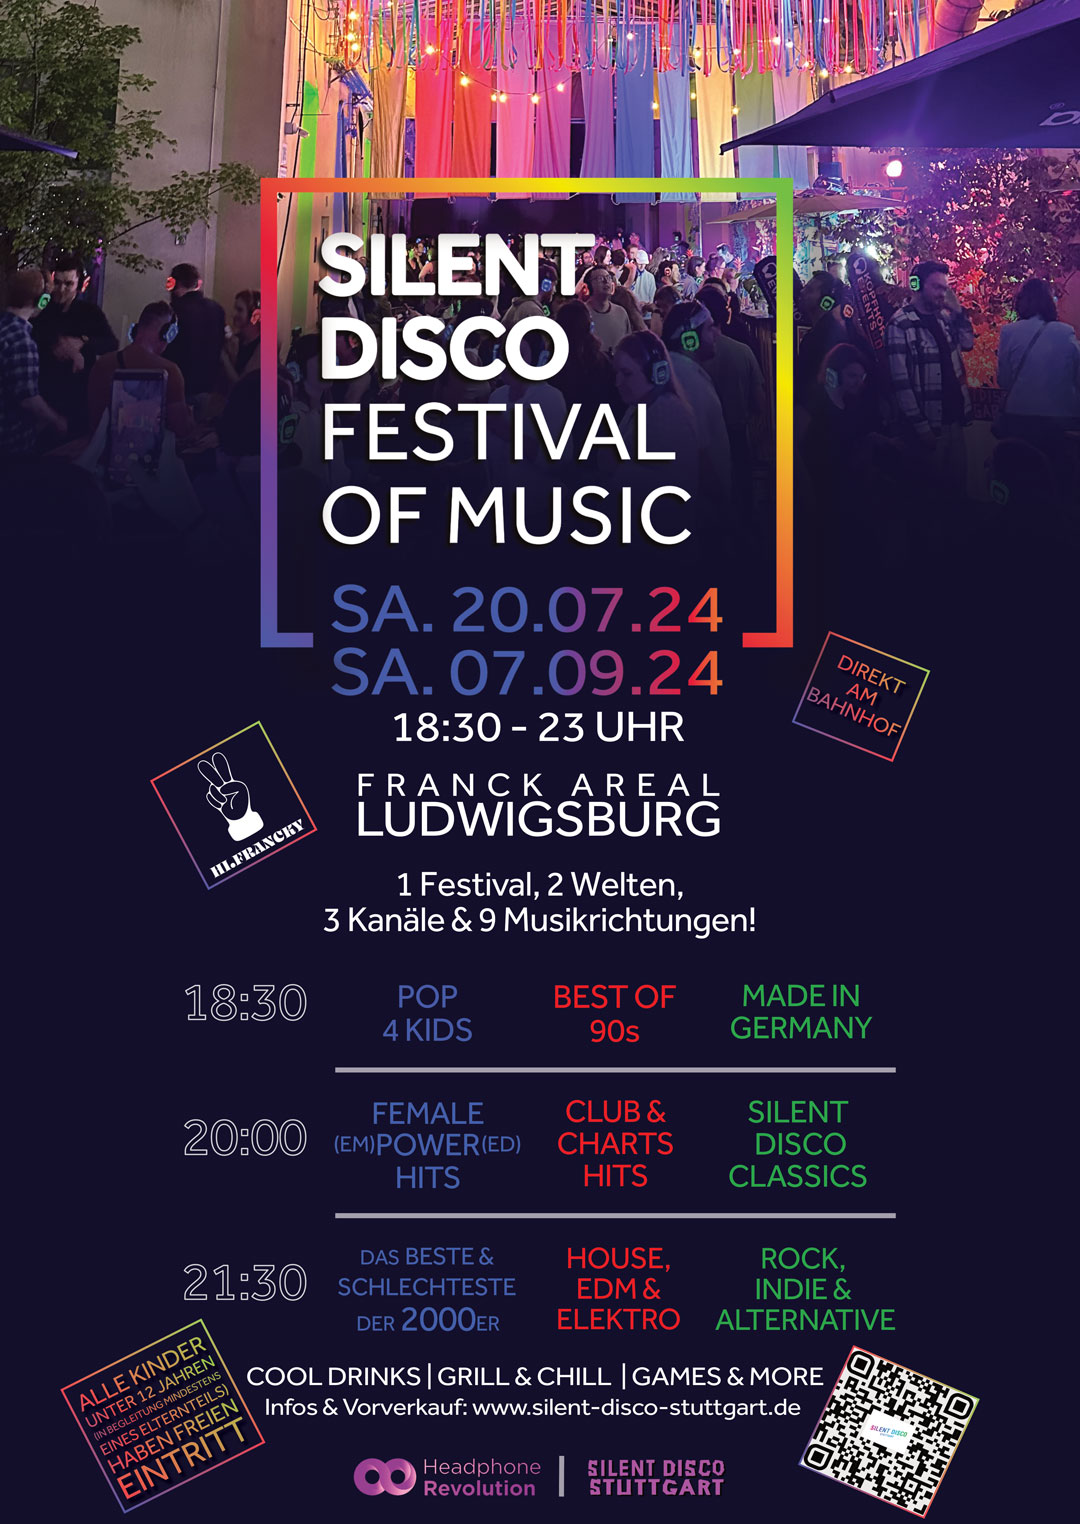 Ein Plakat für das Silent Disco Festival of Music, das am 20.07. und 07.09. in der Hi.Francky Bar in Ludwigsburg stattfindet.